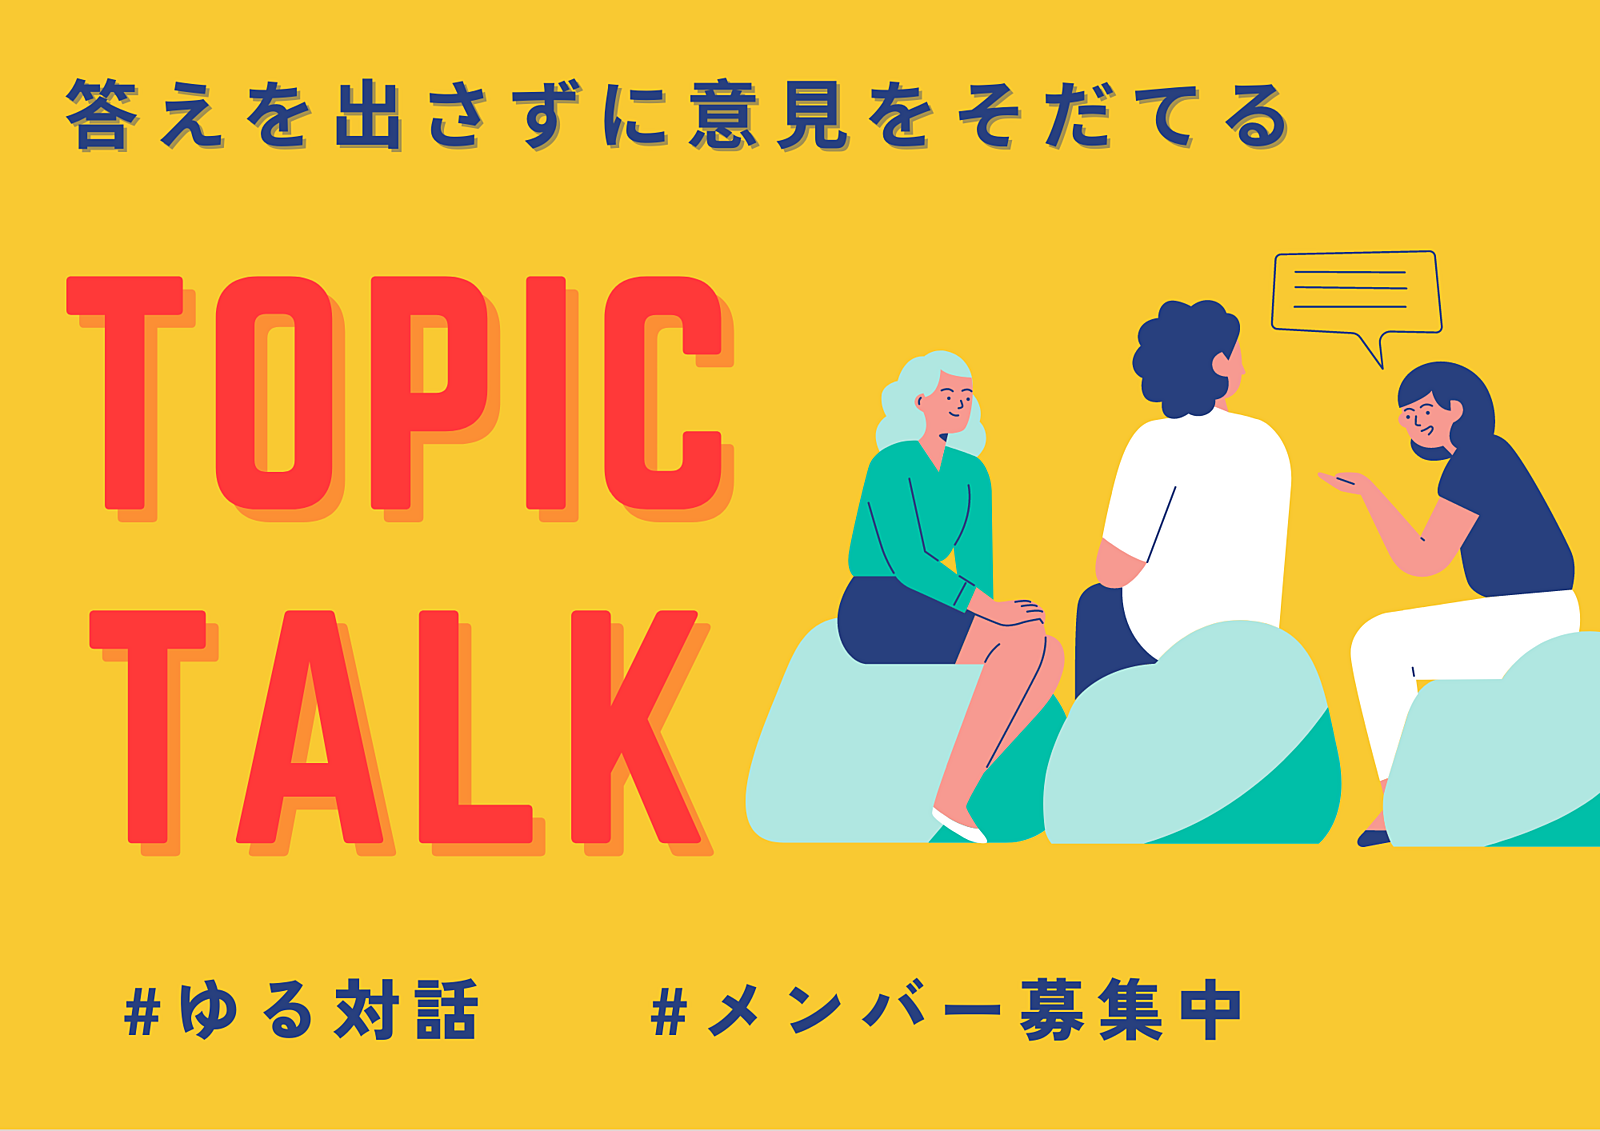 【9/17渋谷開催】それぞれの経験をシェアして正解のないトークを楽しもう。みんなで真剣に考える「そもそも」と当たり前を疑う時間。